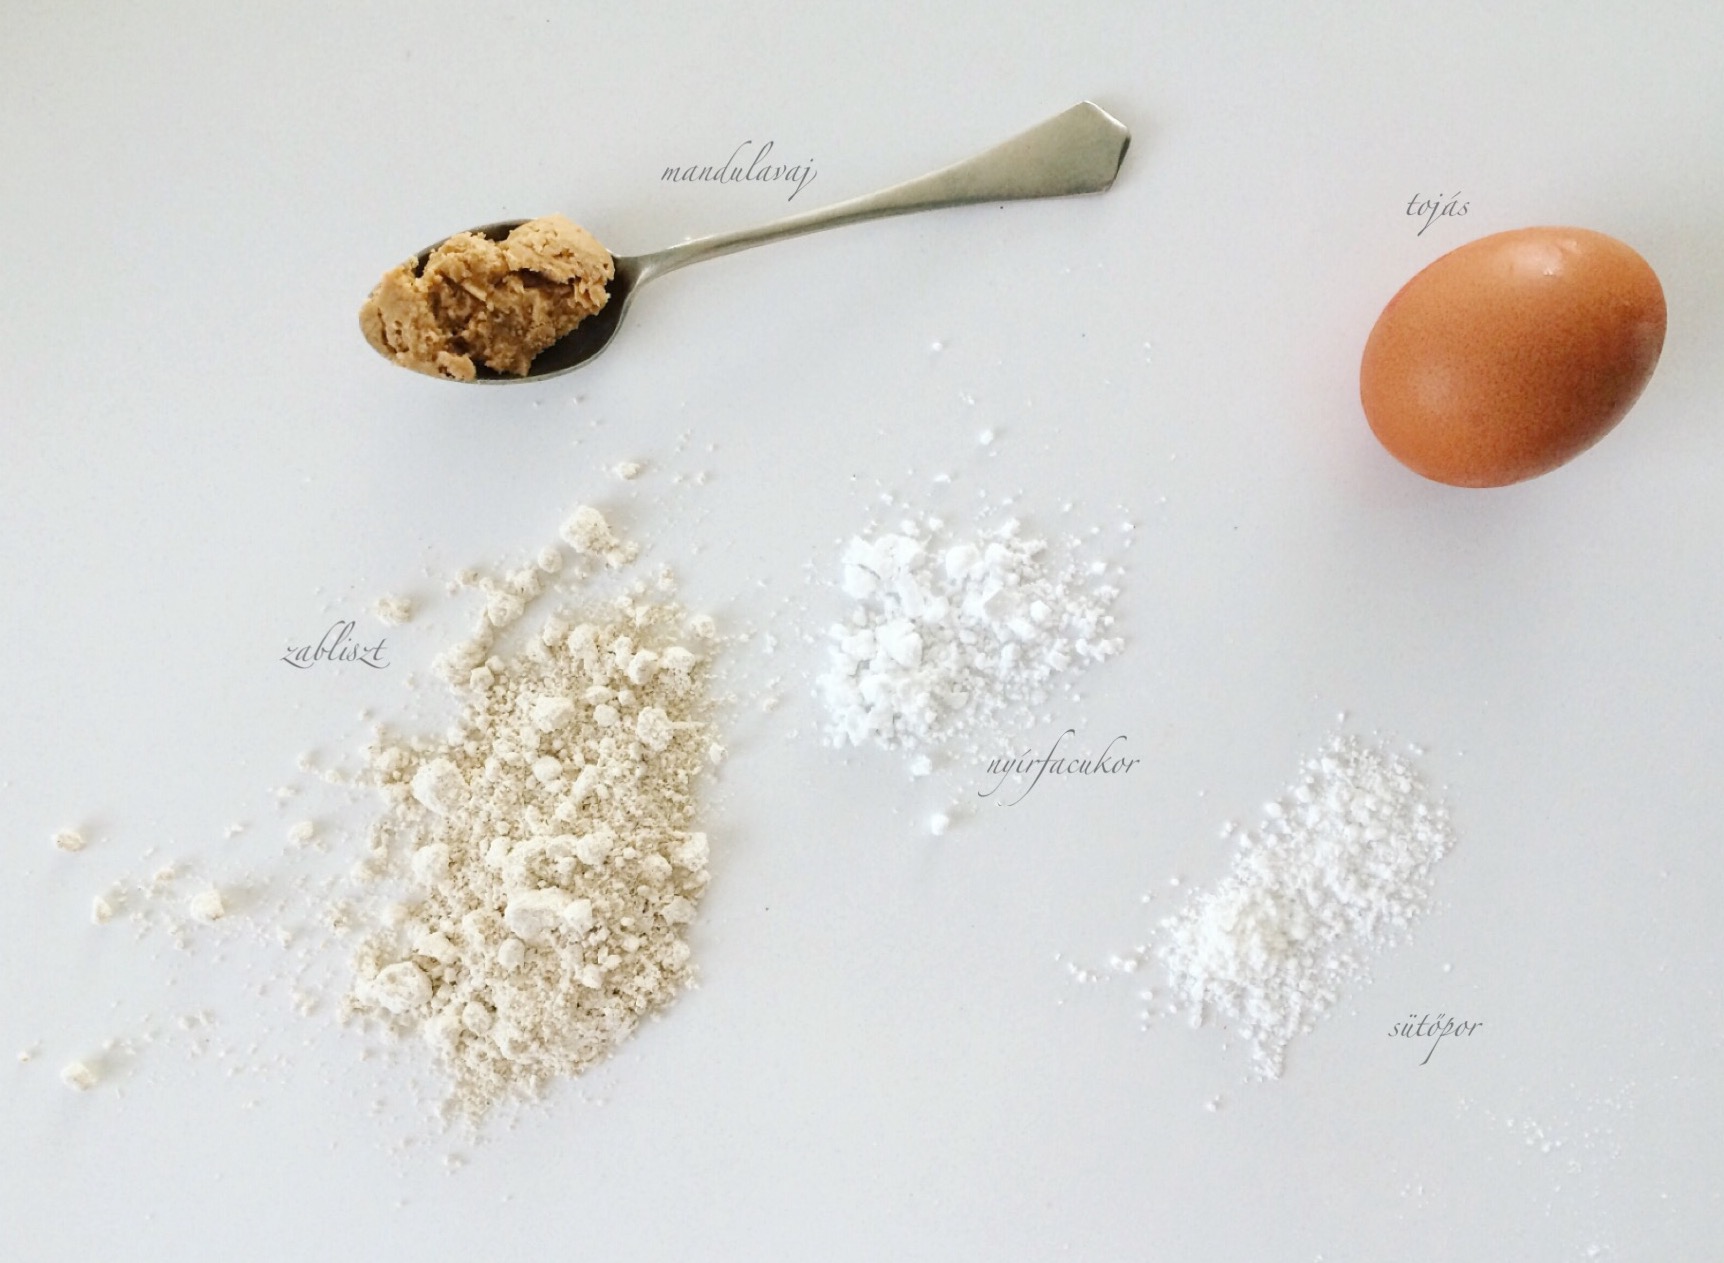 Az 5 hozzávaló: MyProtein mandulavaj, zabliszt, tojás, nyírfacukor, sütőpor